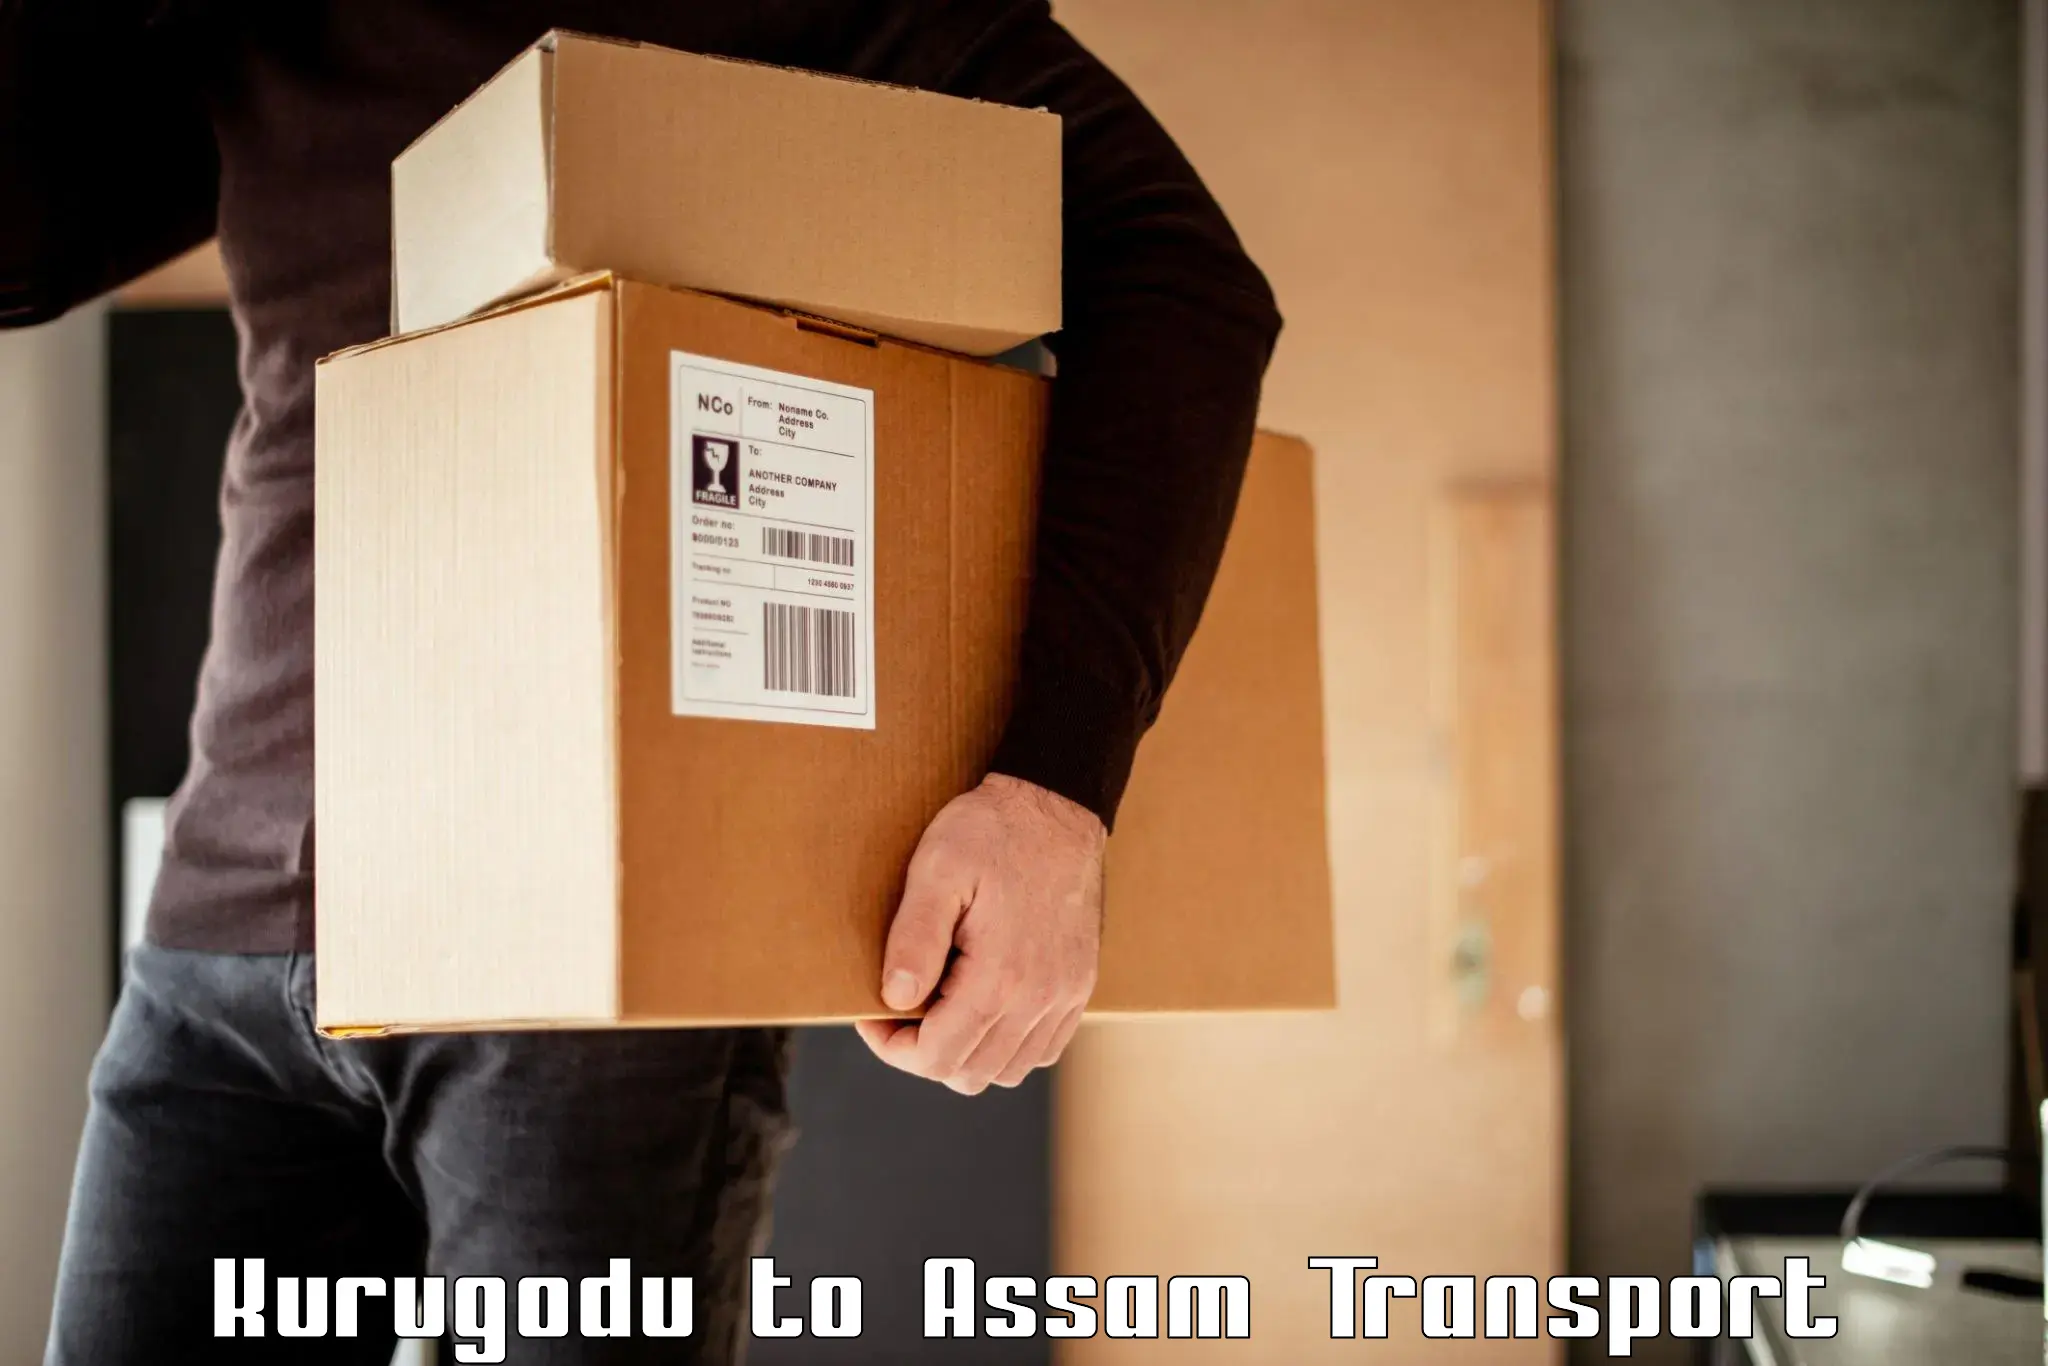 Furniture transport service Kurugodu to Sarthebari